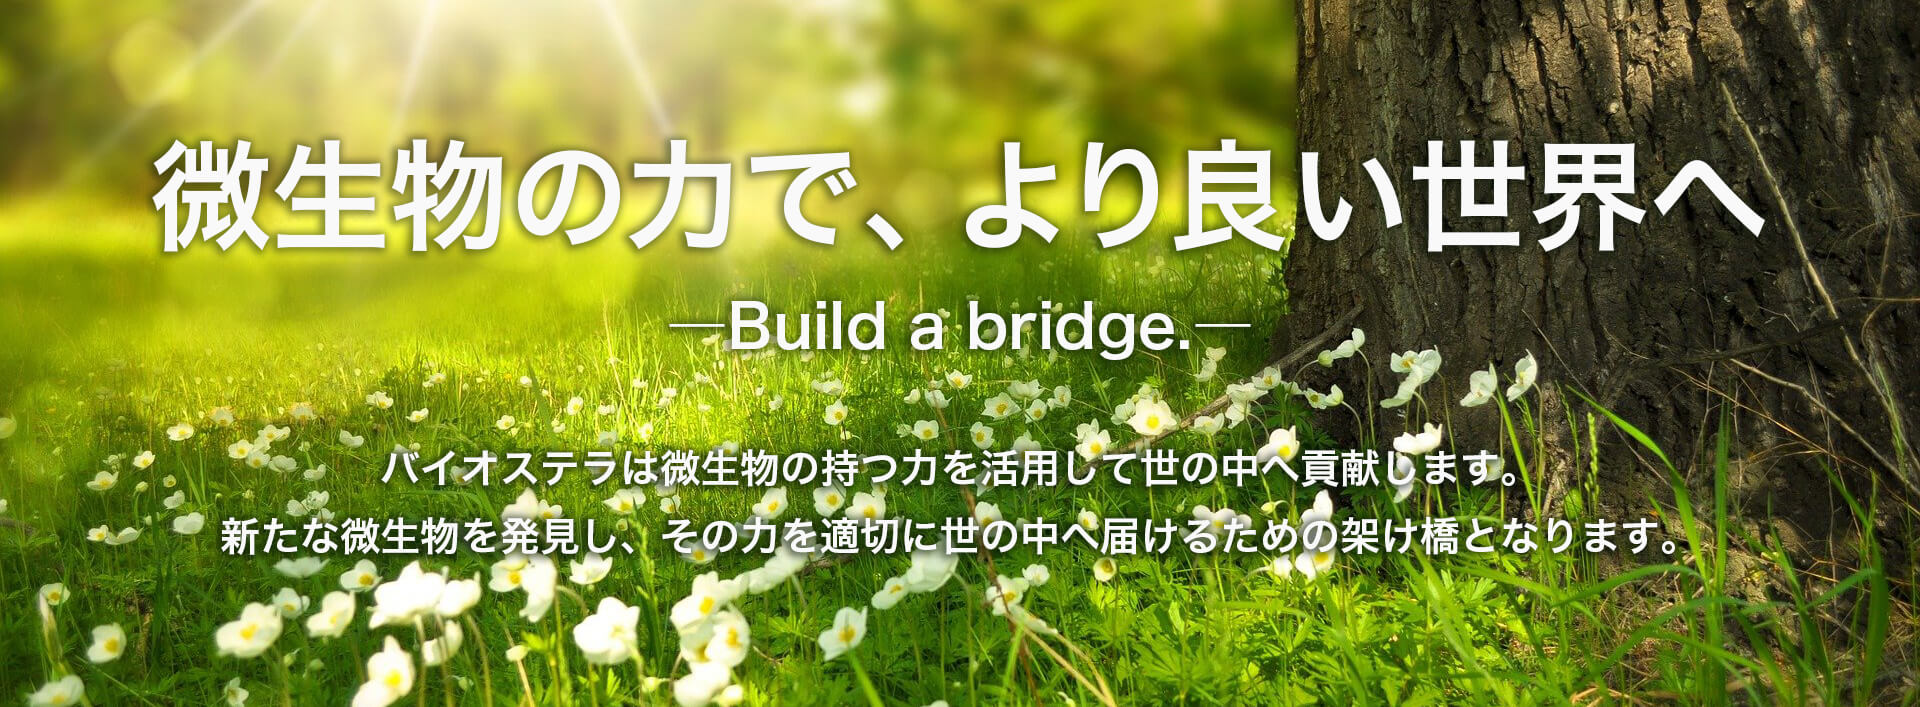 微生物の力で、より良い世界へ-Build a bridge.-